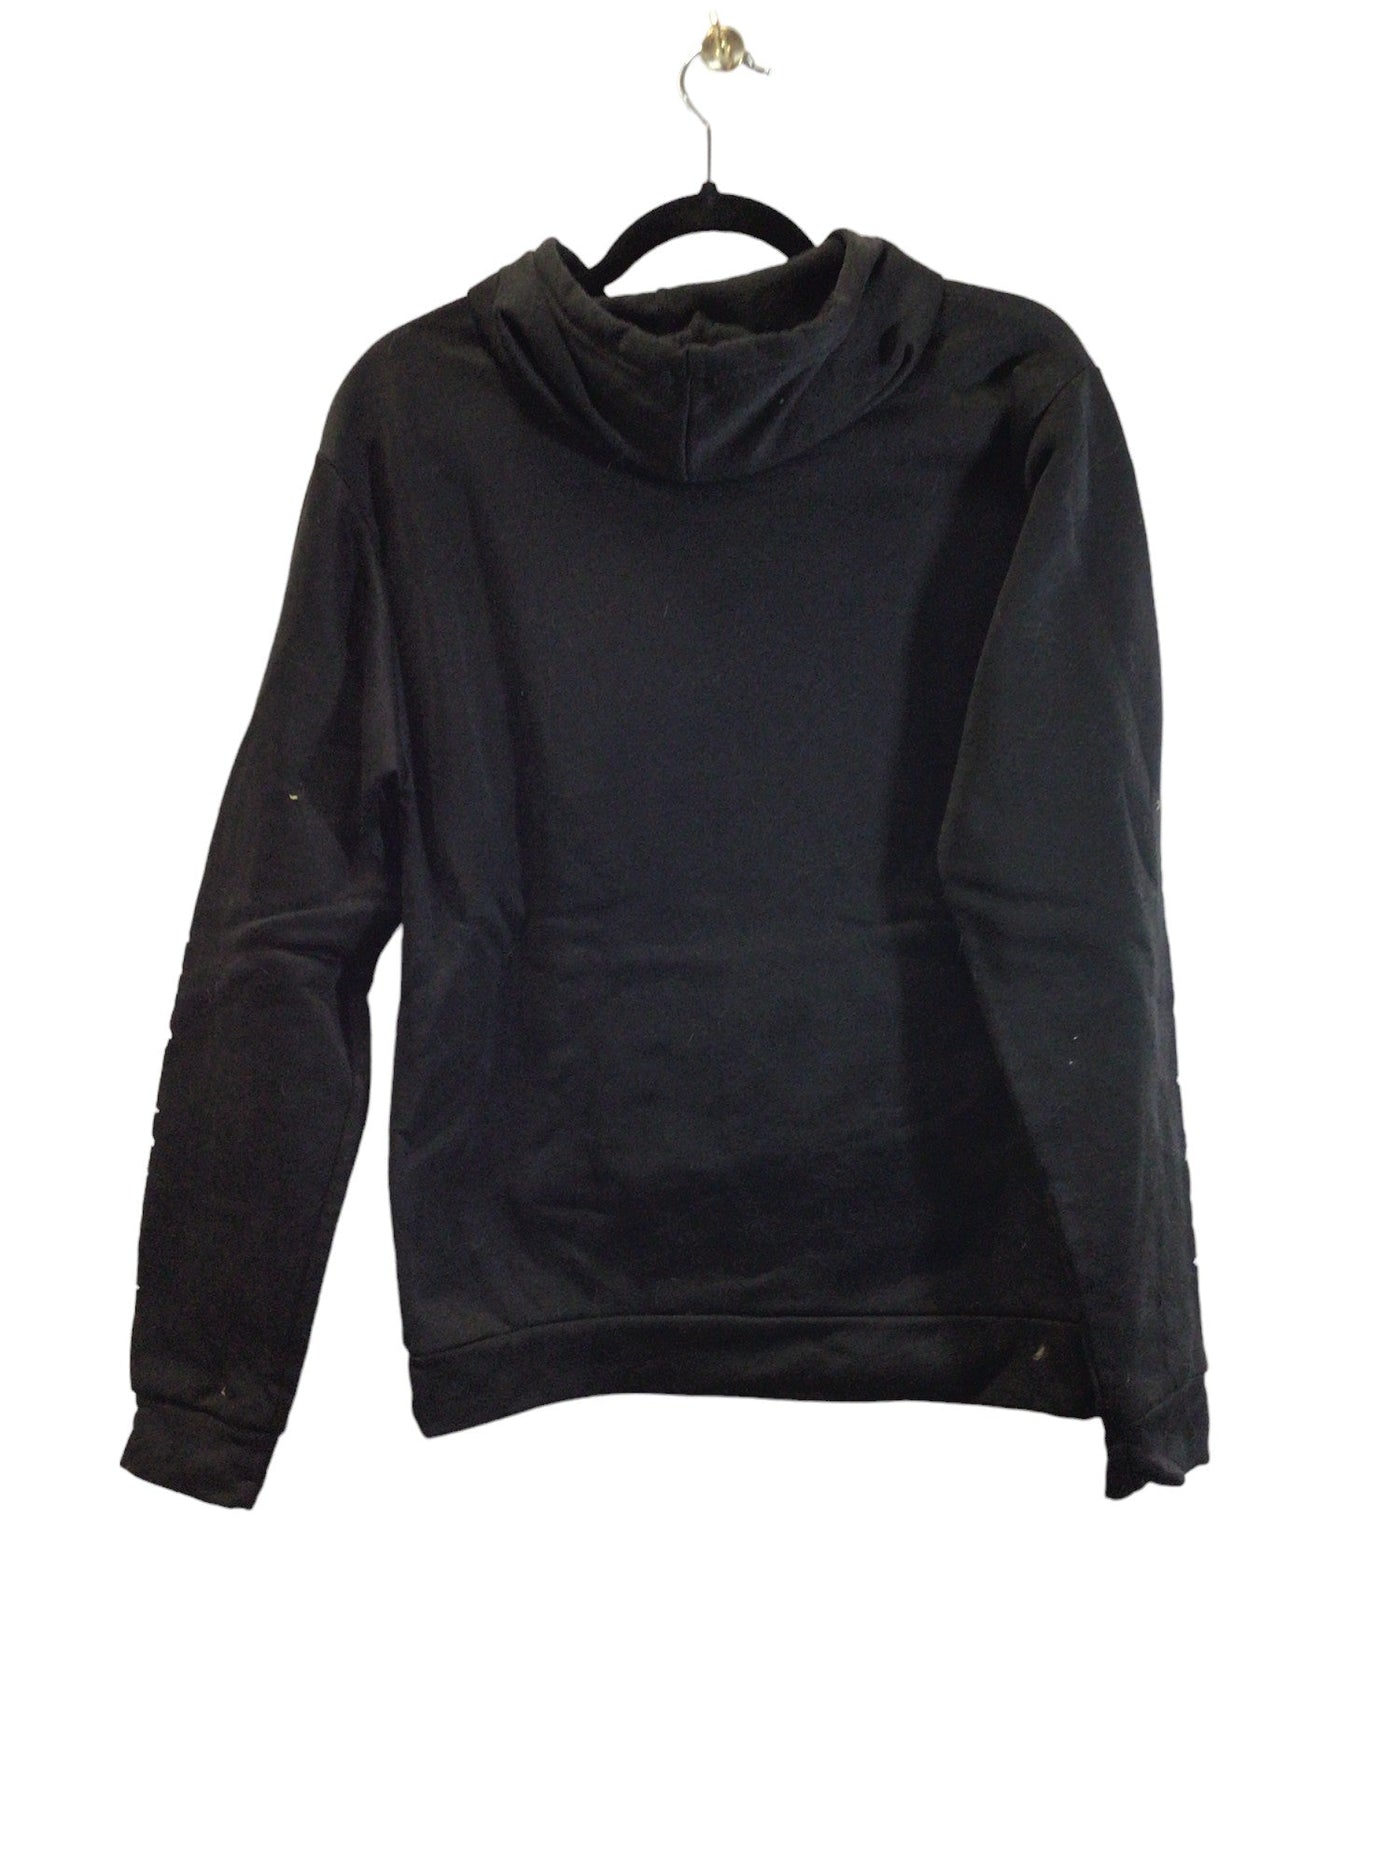 UNBRANDED Women Sweatshirts Regular fit in Black - Size L | 8.99 $ KOOP